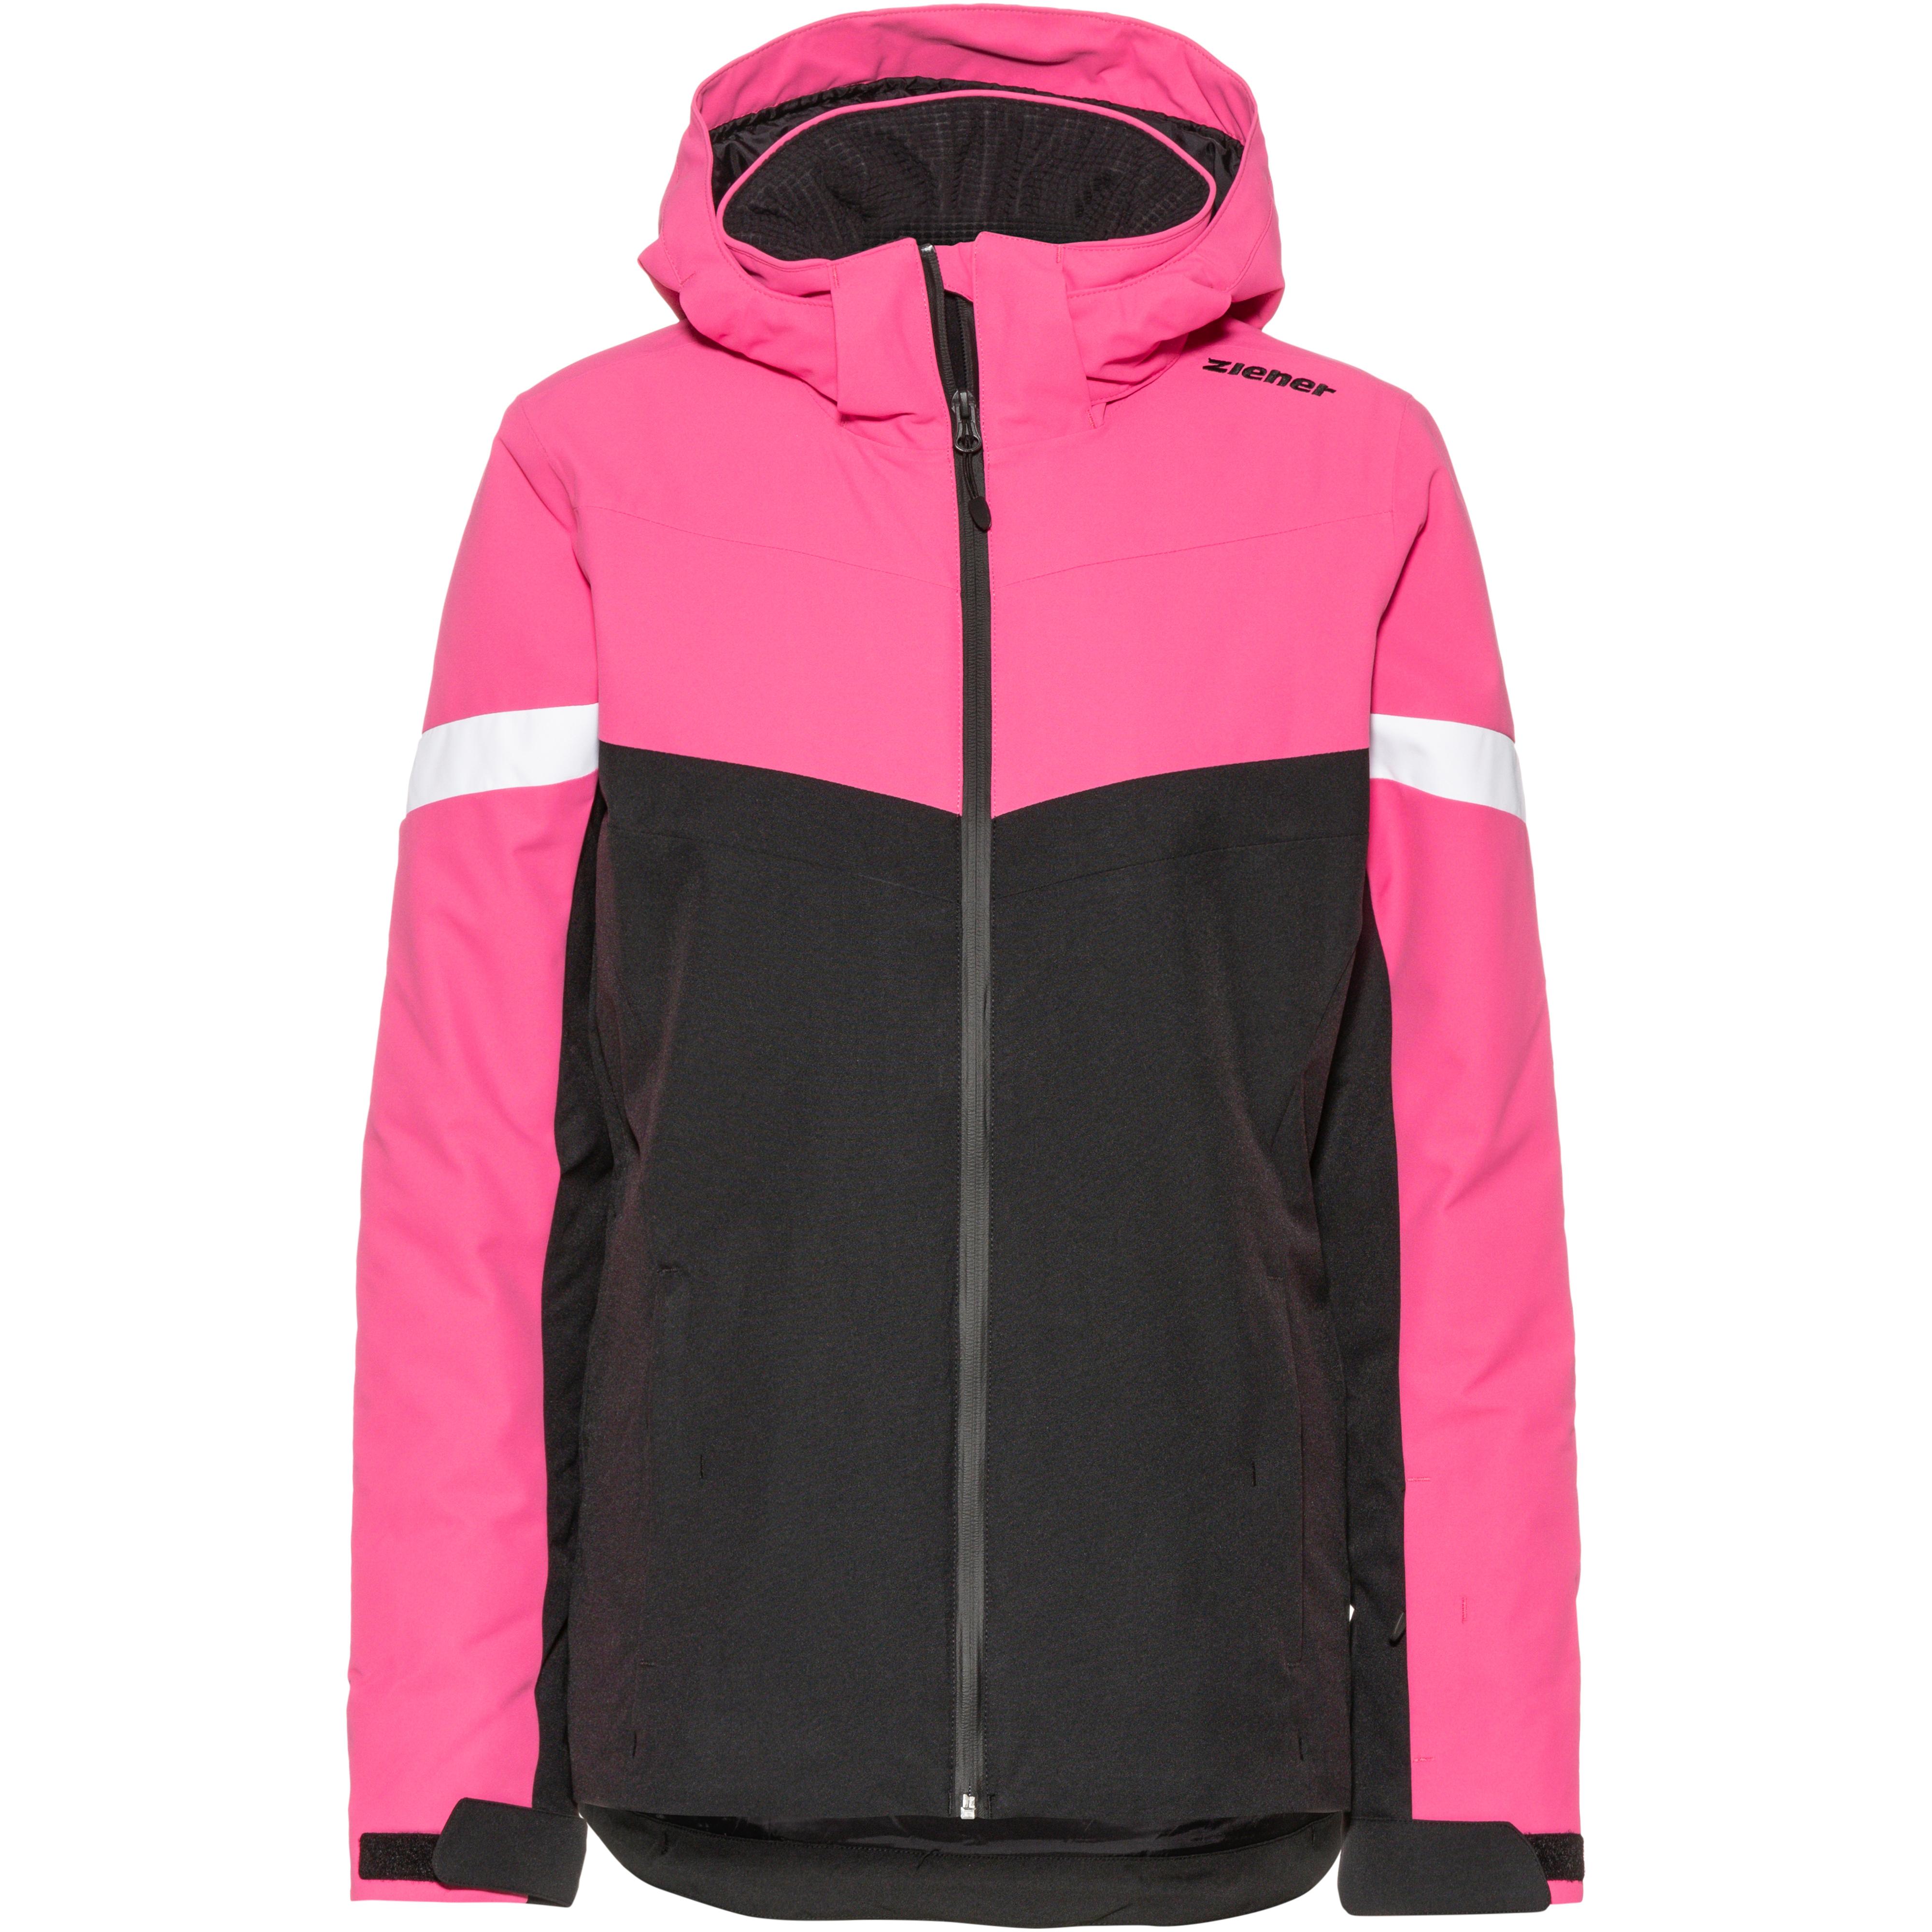 PEGINA Shop SportScheck Damen pink kaufen im Online Skijacke dahlia von Ziener